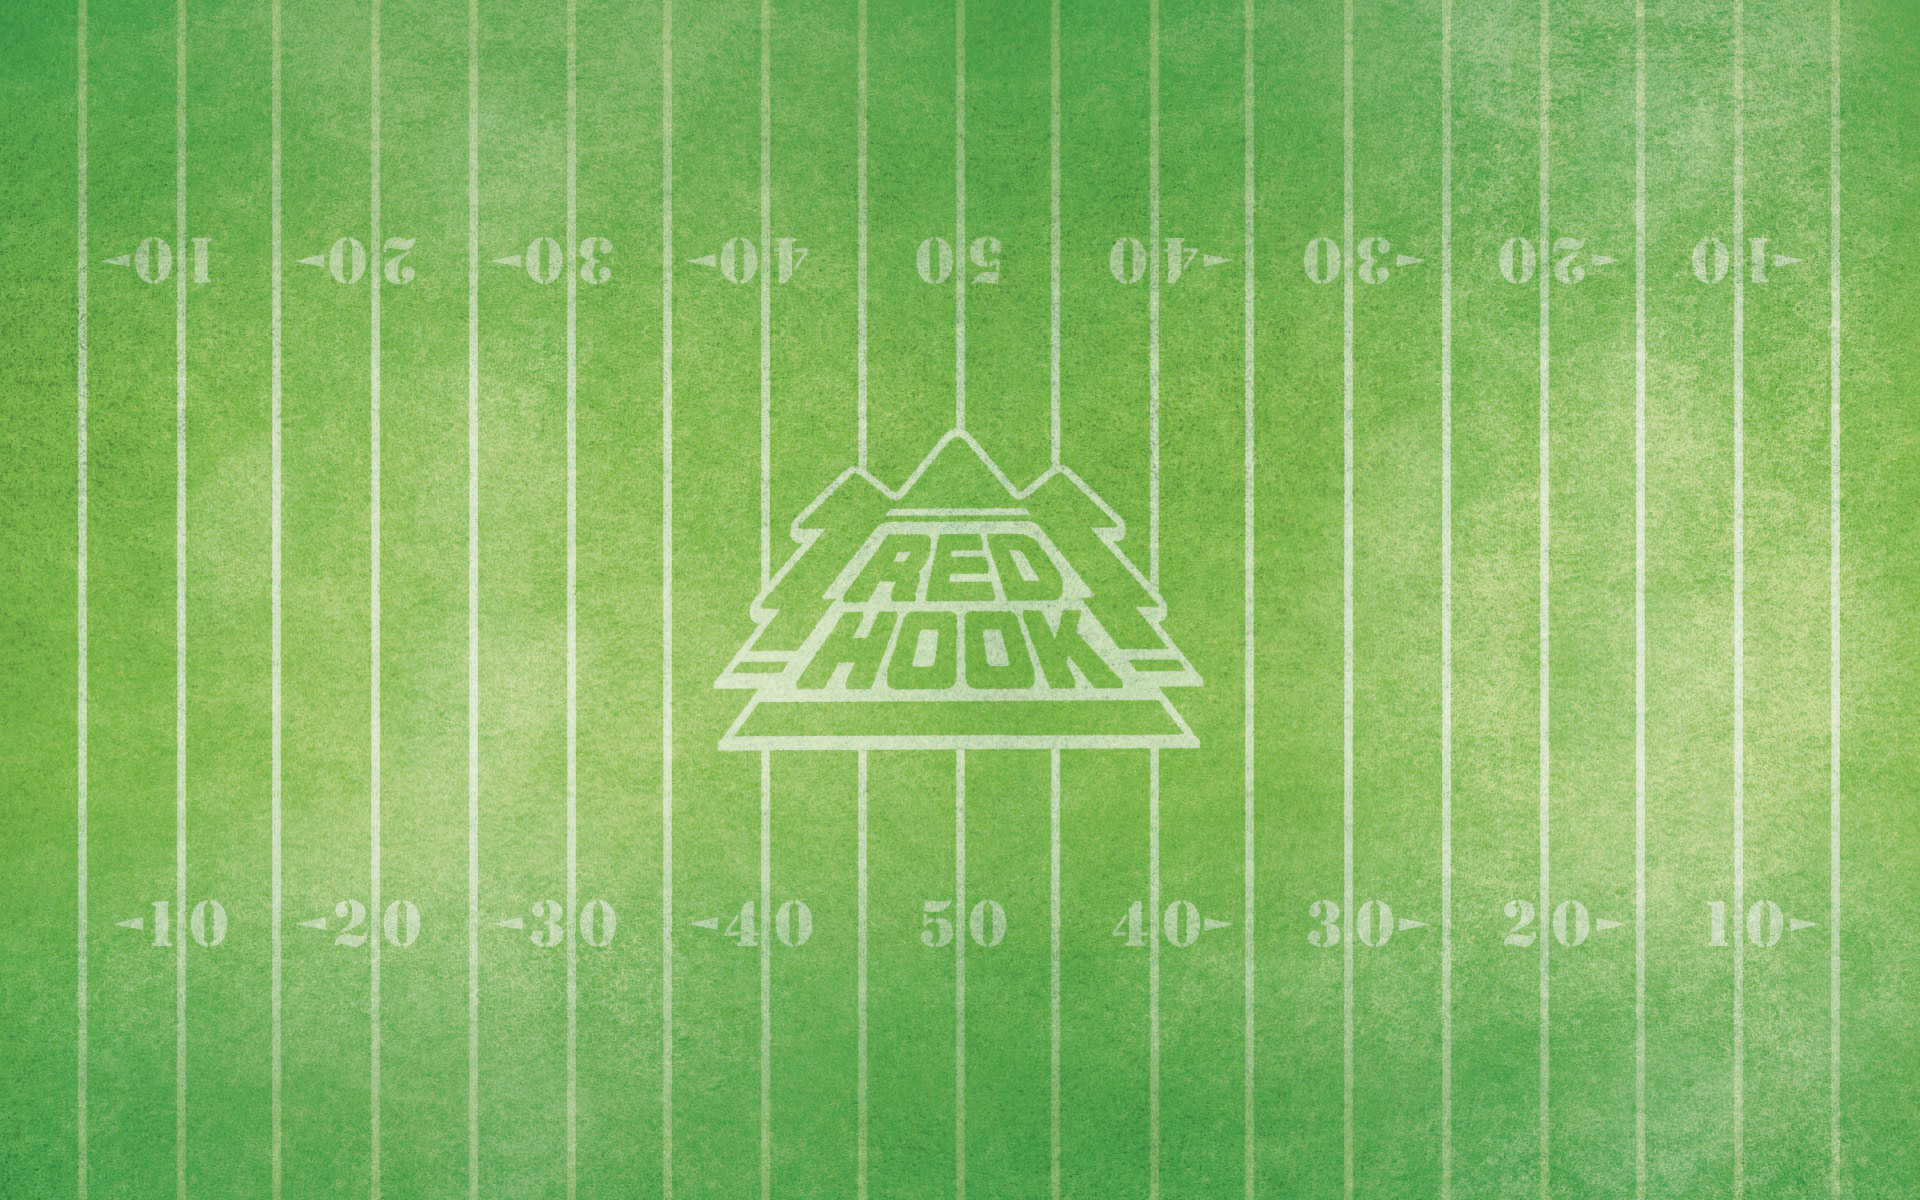 Nfl Football Field wallpaper   190061 1920x1200